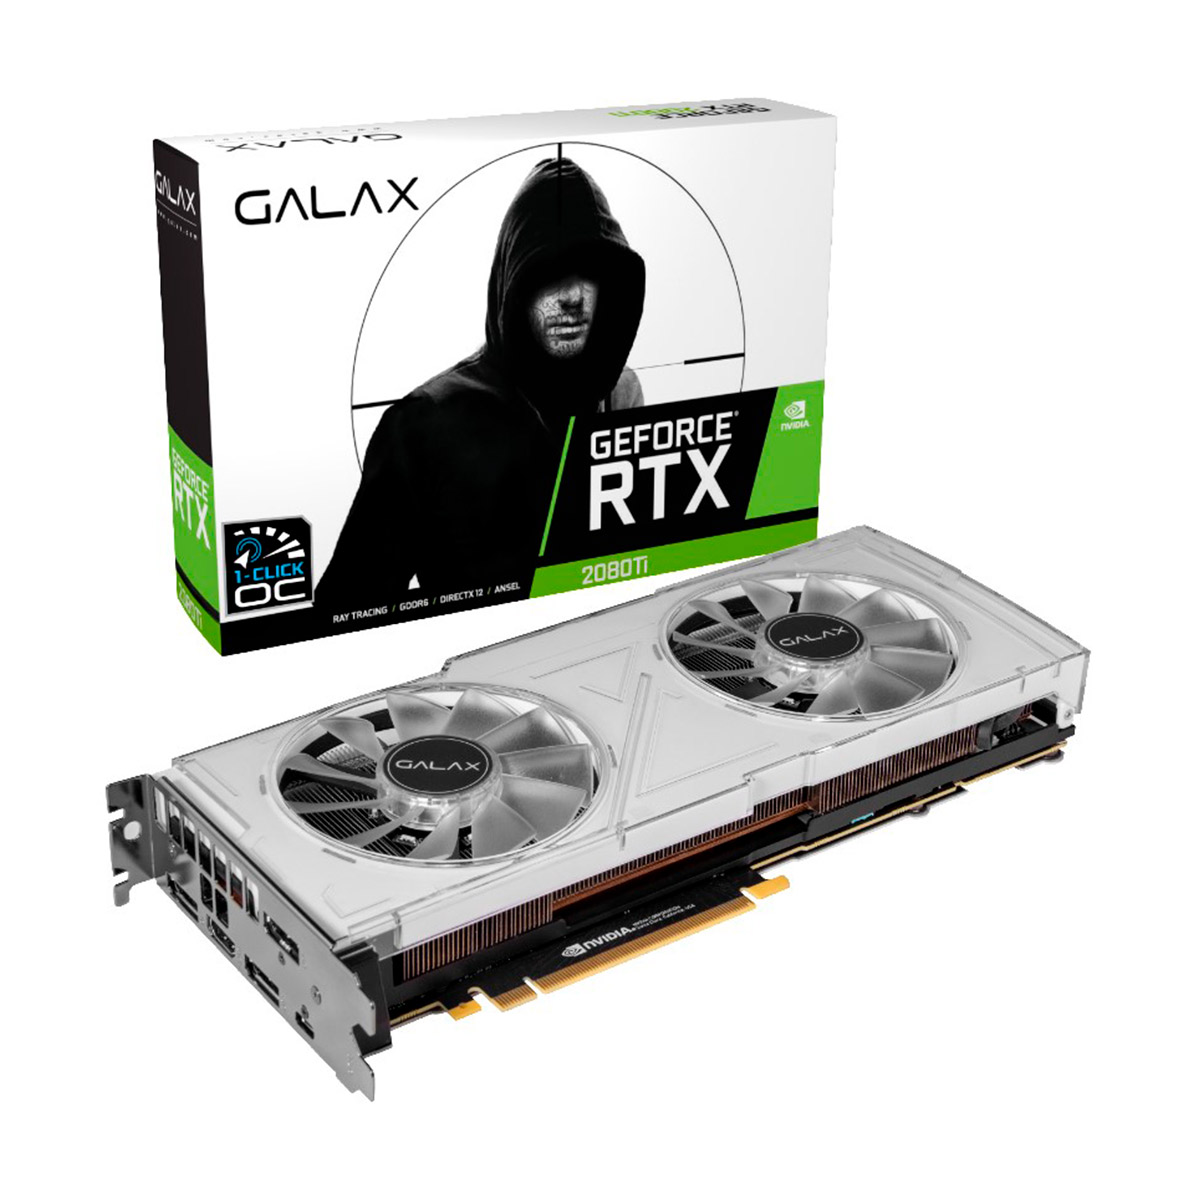 GeForce RTX 2080 Ti 11GB GDDR6 352bits - Dual White - 1-Click OC - Galax 28IULBUCT4KK